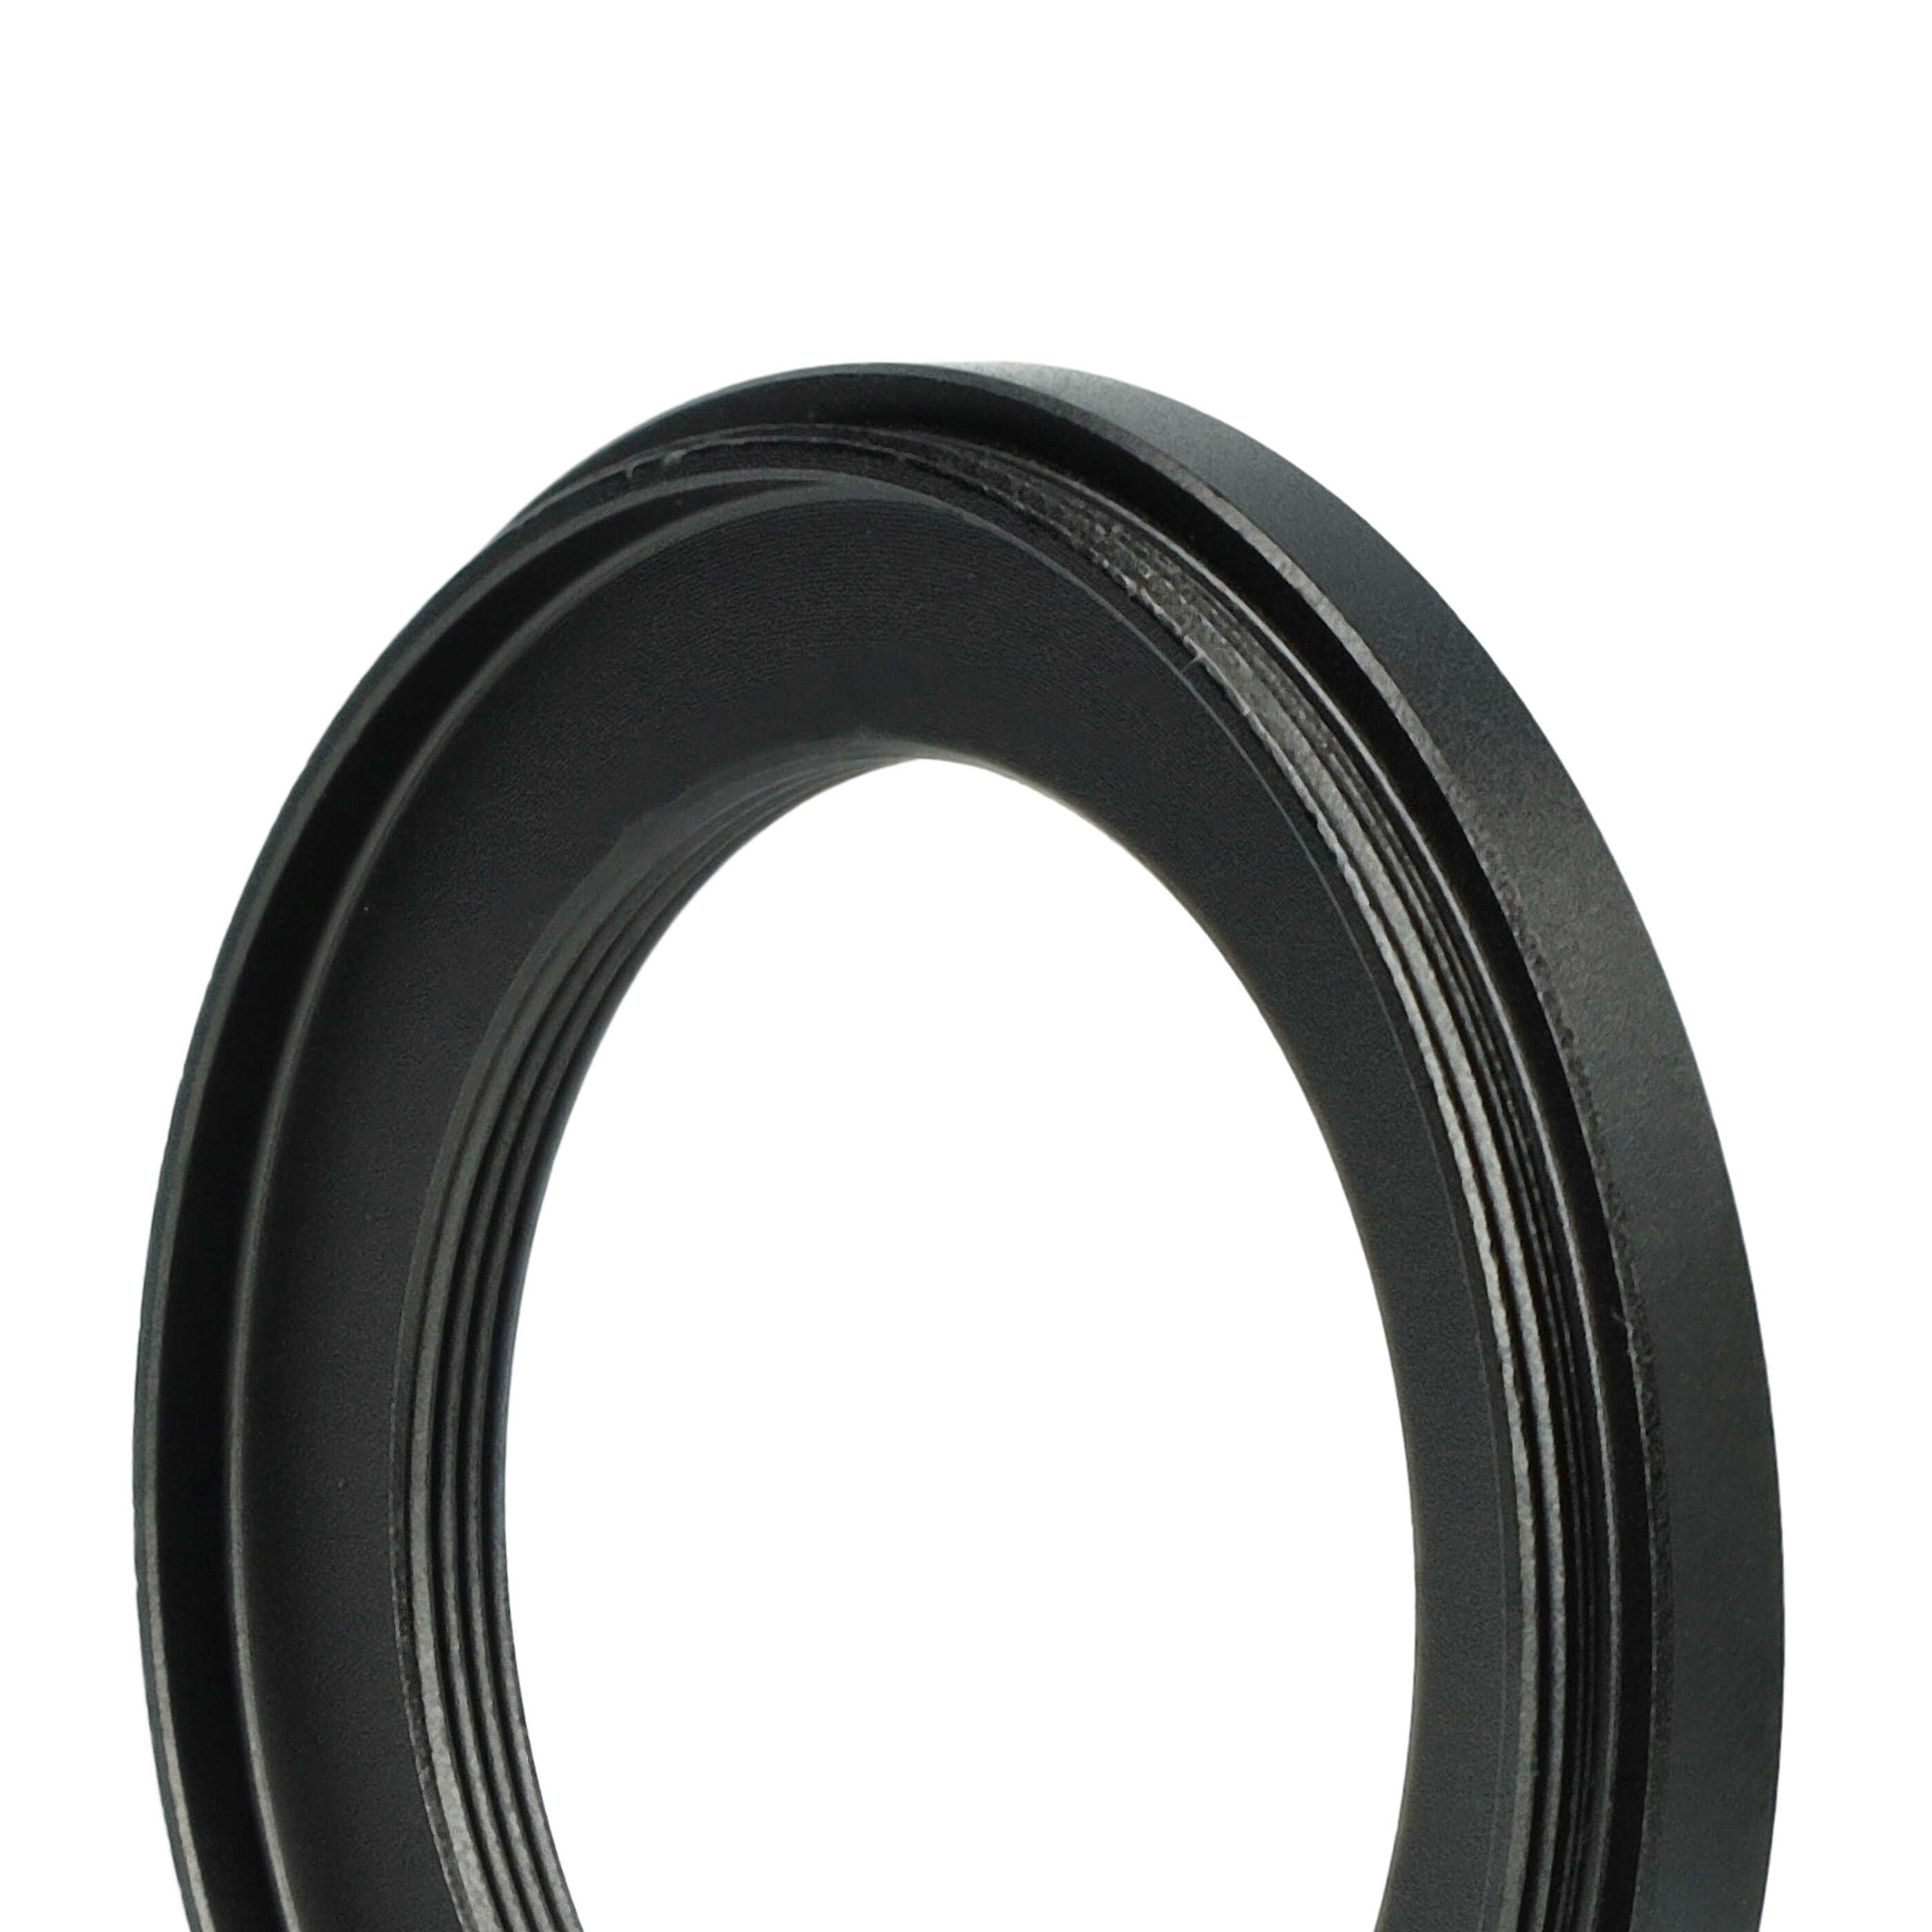 Step-Down-Ring Adapter von 52 mm auf 37 mm passend für Kamera Objektiv - Filteradapter, Metall, schwarz